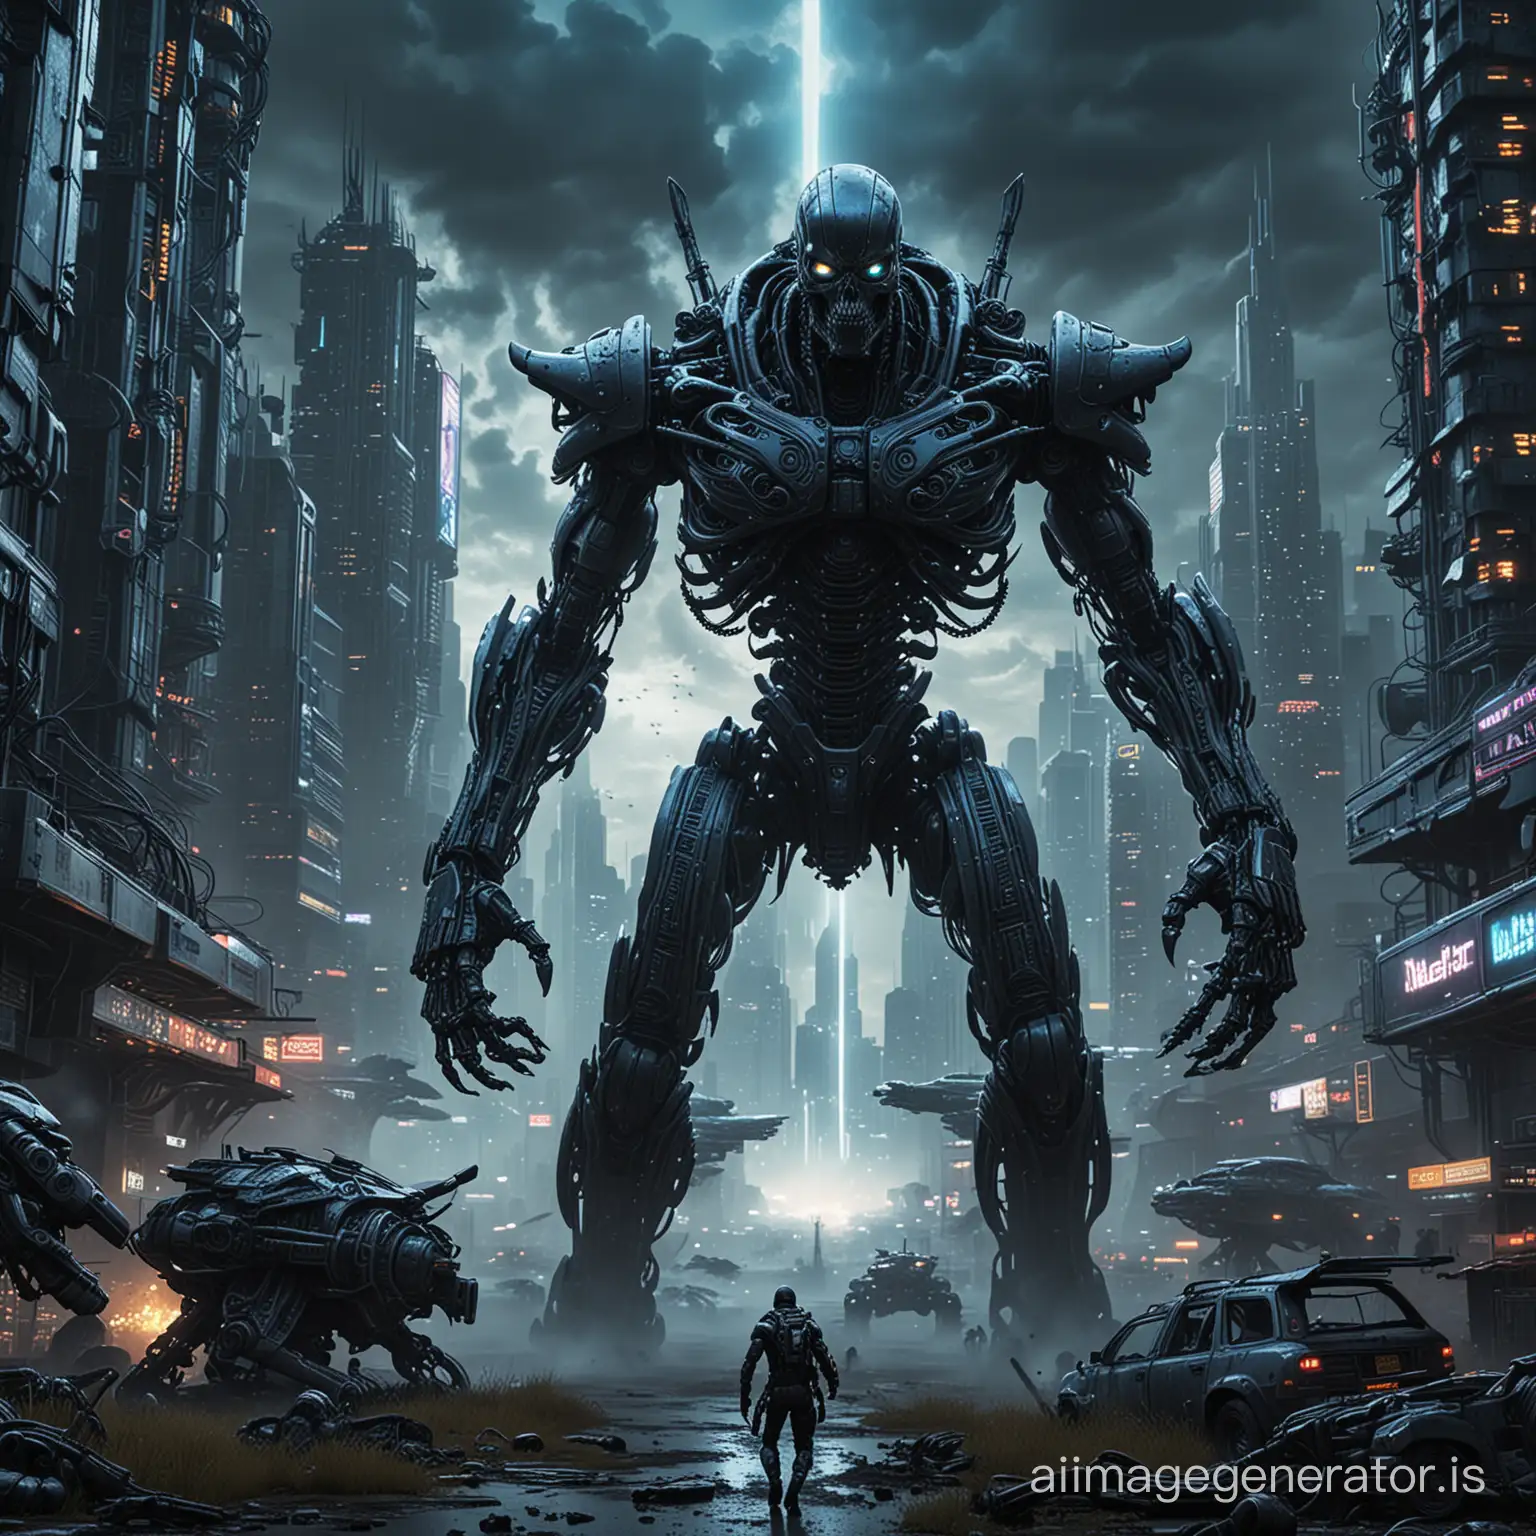 Epic-Battle-Giger-Alien-vs-James-Cameron-Terminator-in-Futuristic-Cyber-Cityscape